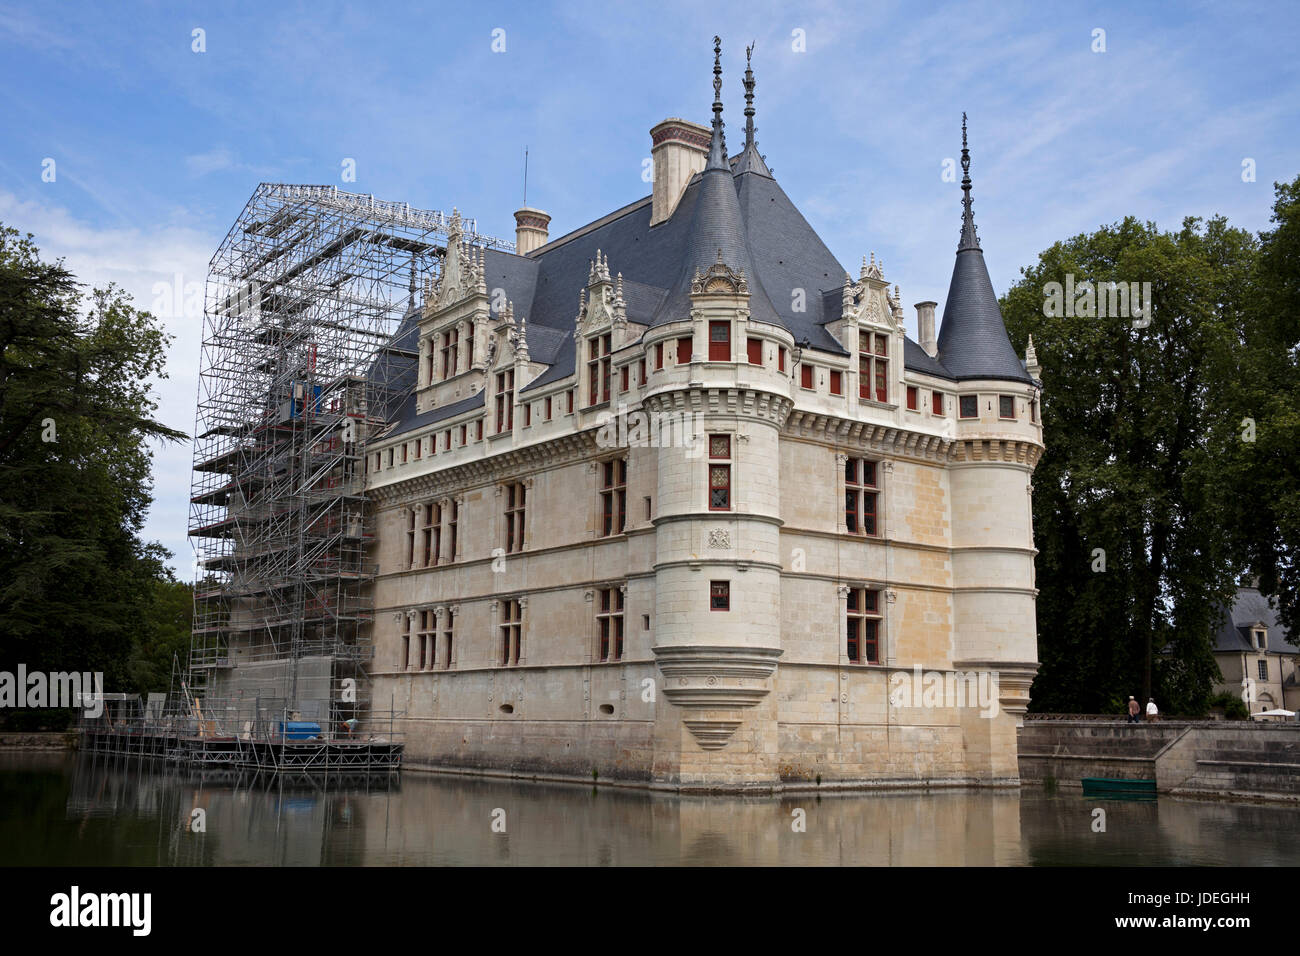 Azay le Rideau, dans le département d' Indre-et-Loire Chateau, France, Europe Banque D'Images